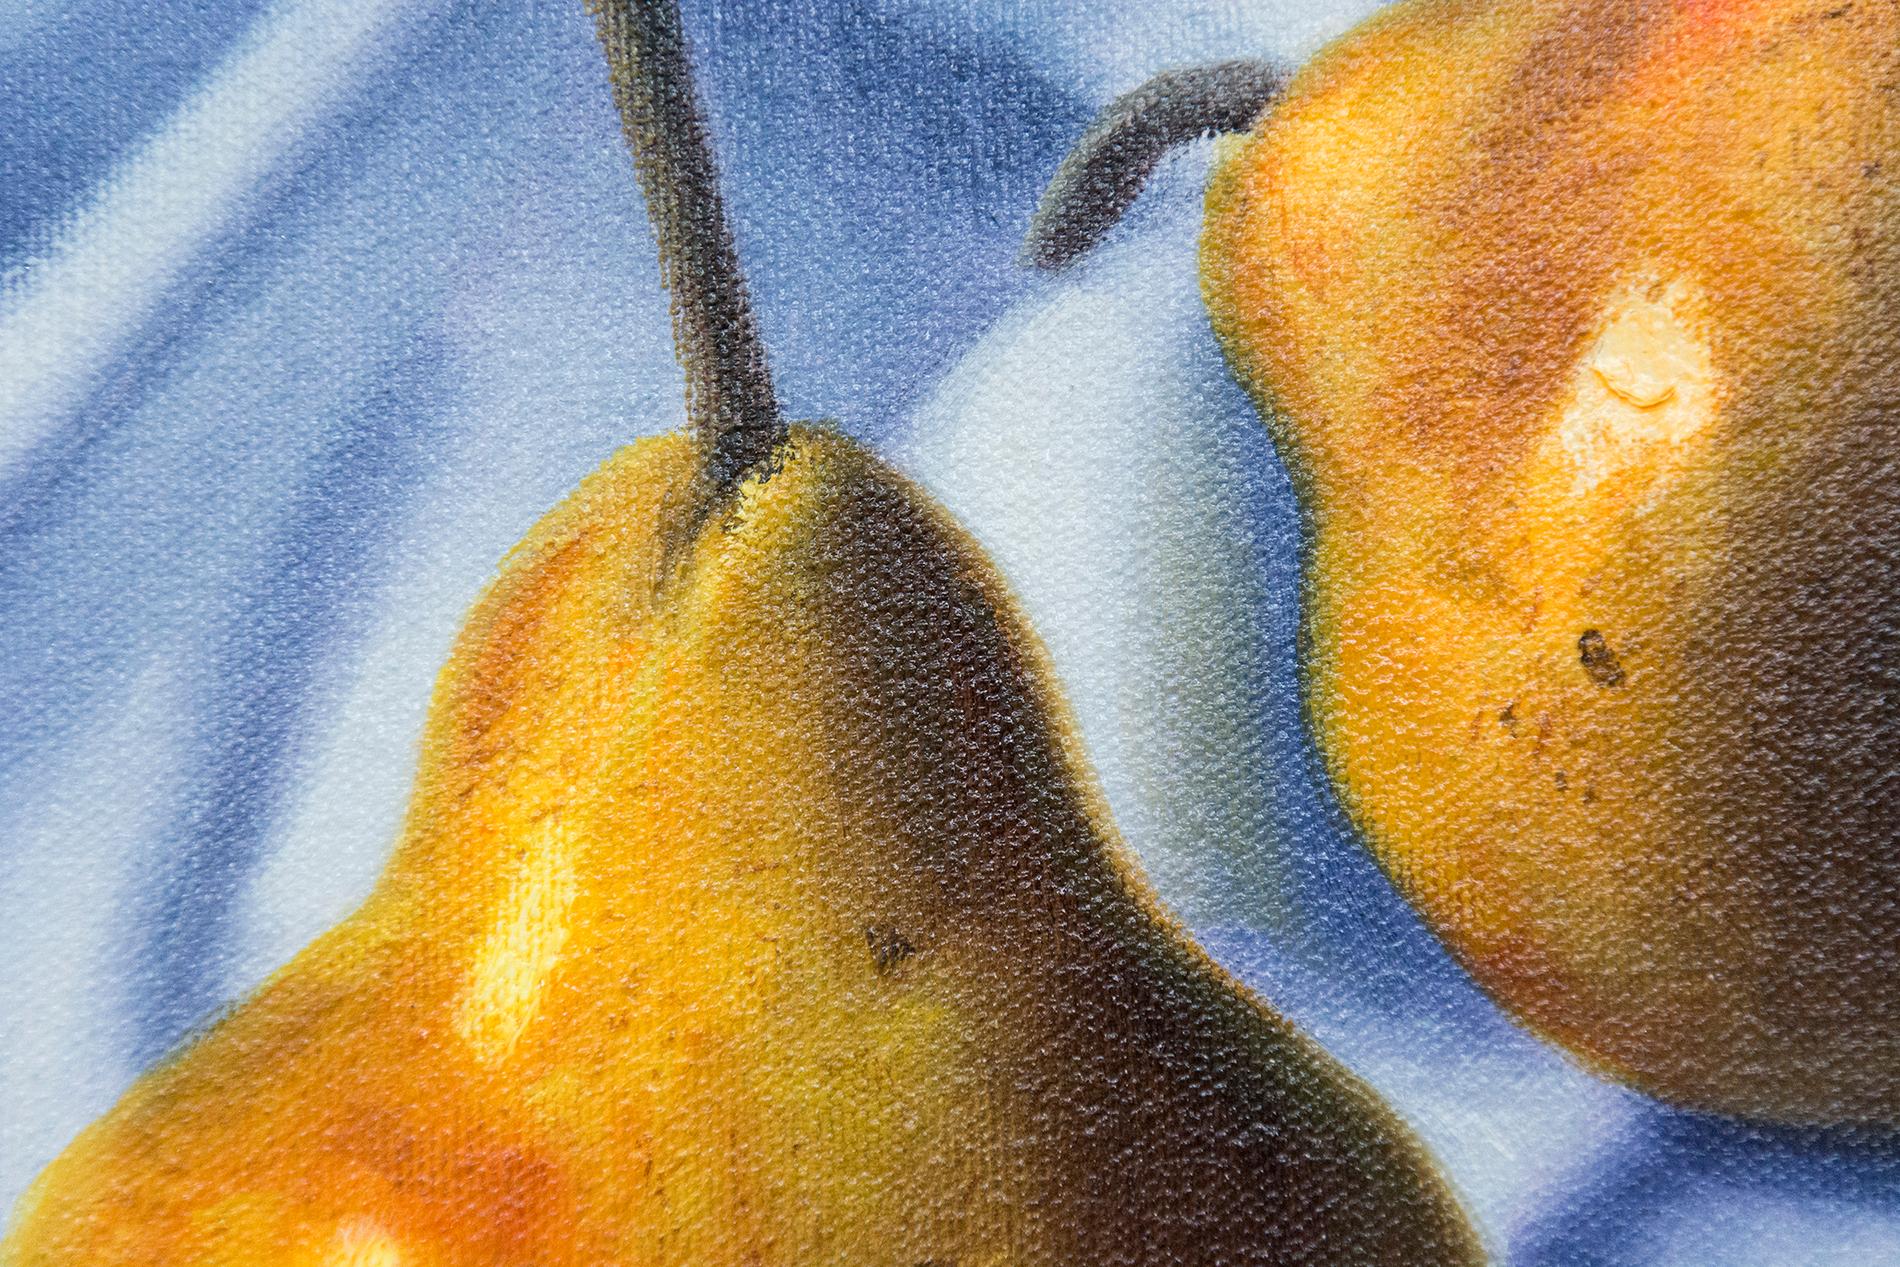 paintings of pears